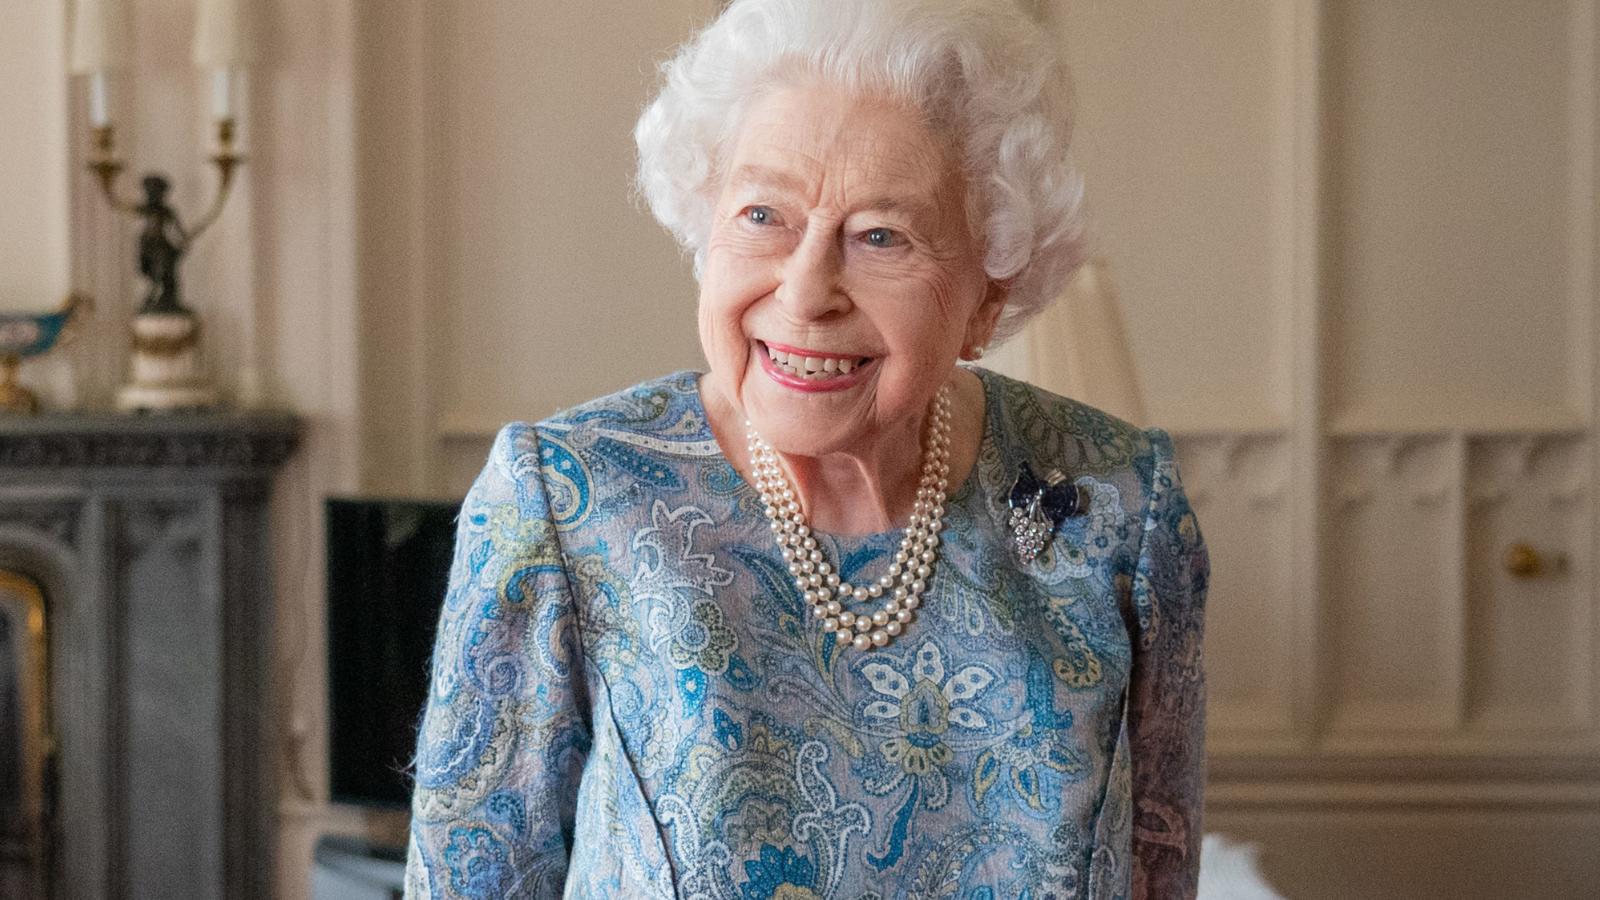 Queen Elizabeth II’s health worries her doctors